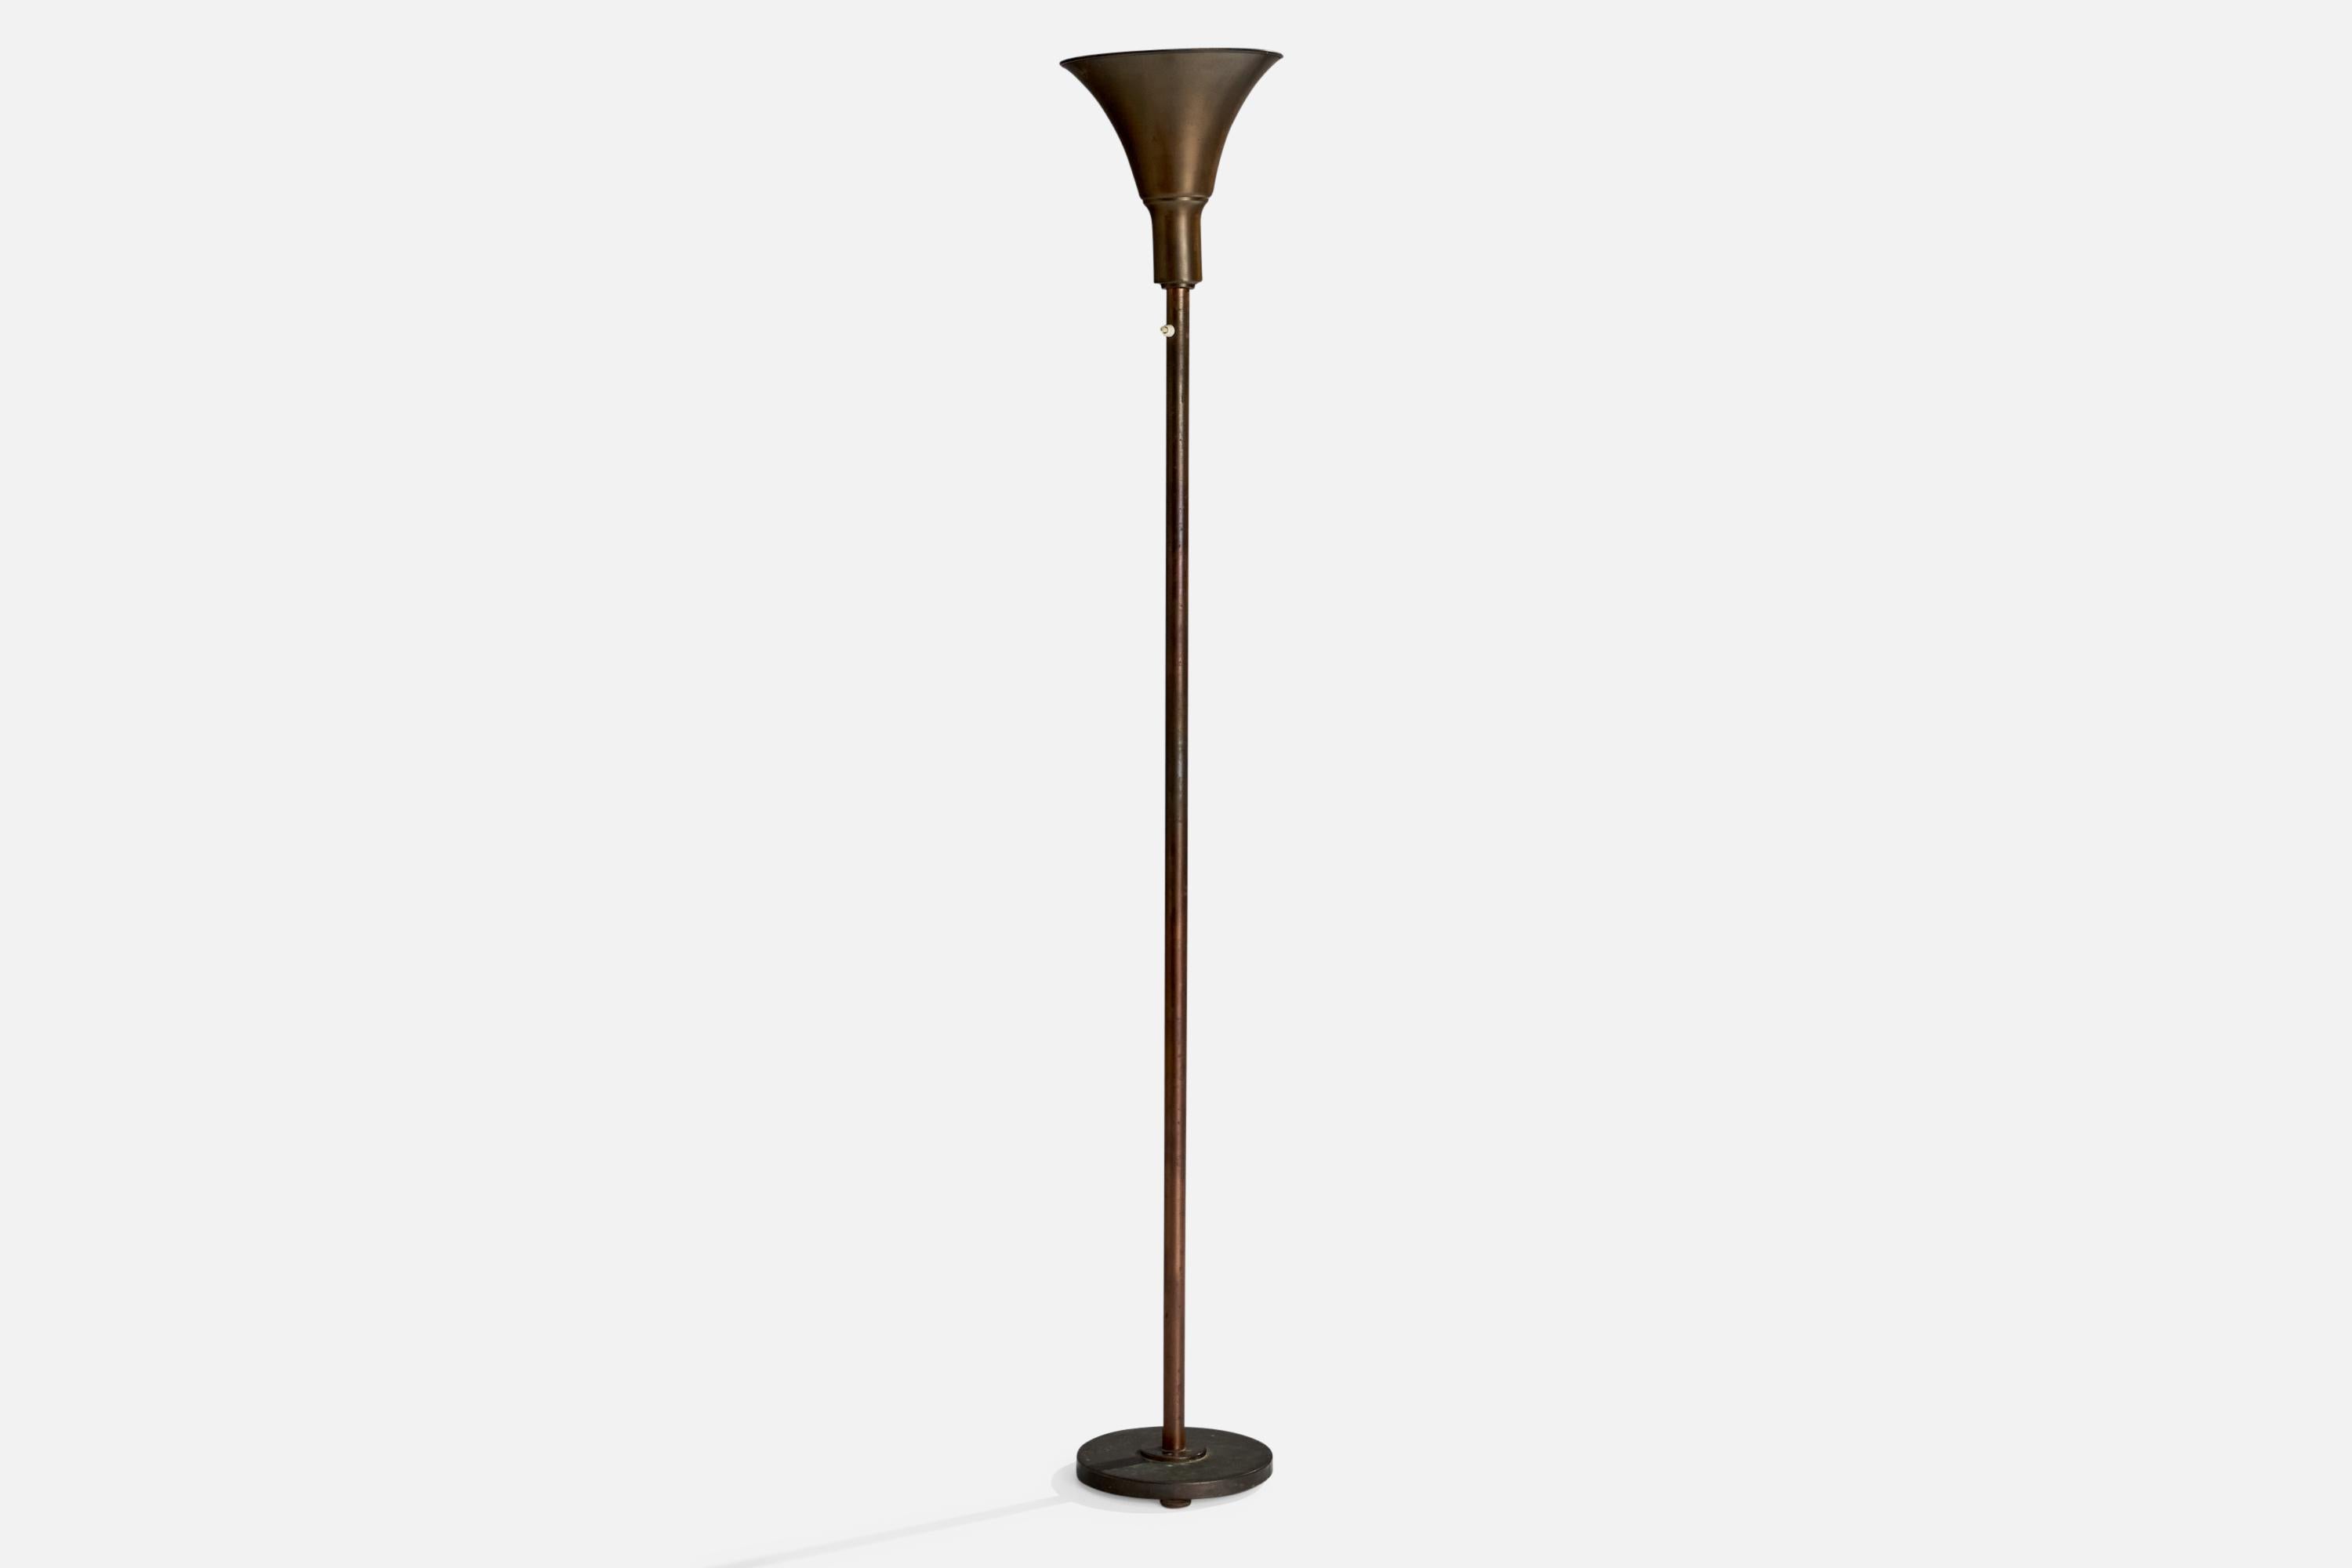 Stehlampe aus Bronze, entworfen und hergestellt in Schweden, ca. 1930er Jahre.

Gesamtabmessungen (Zoll): 68,51